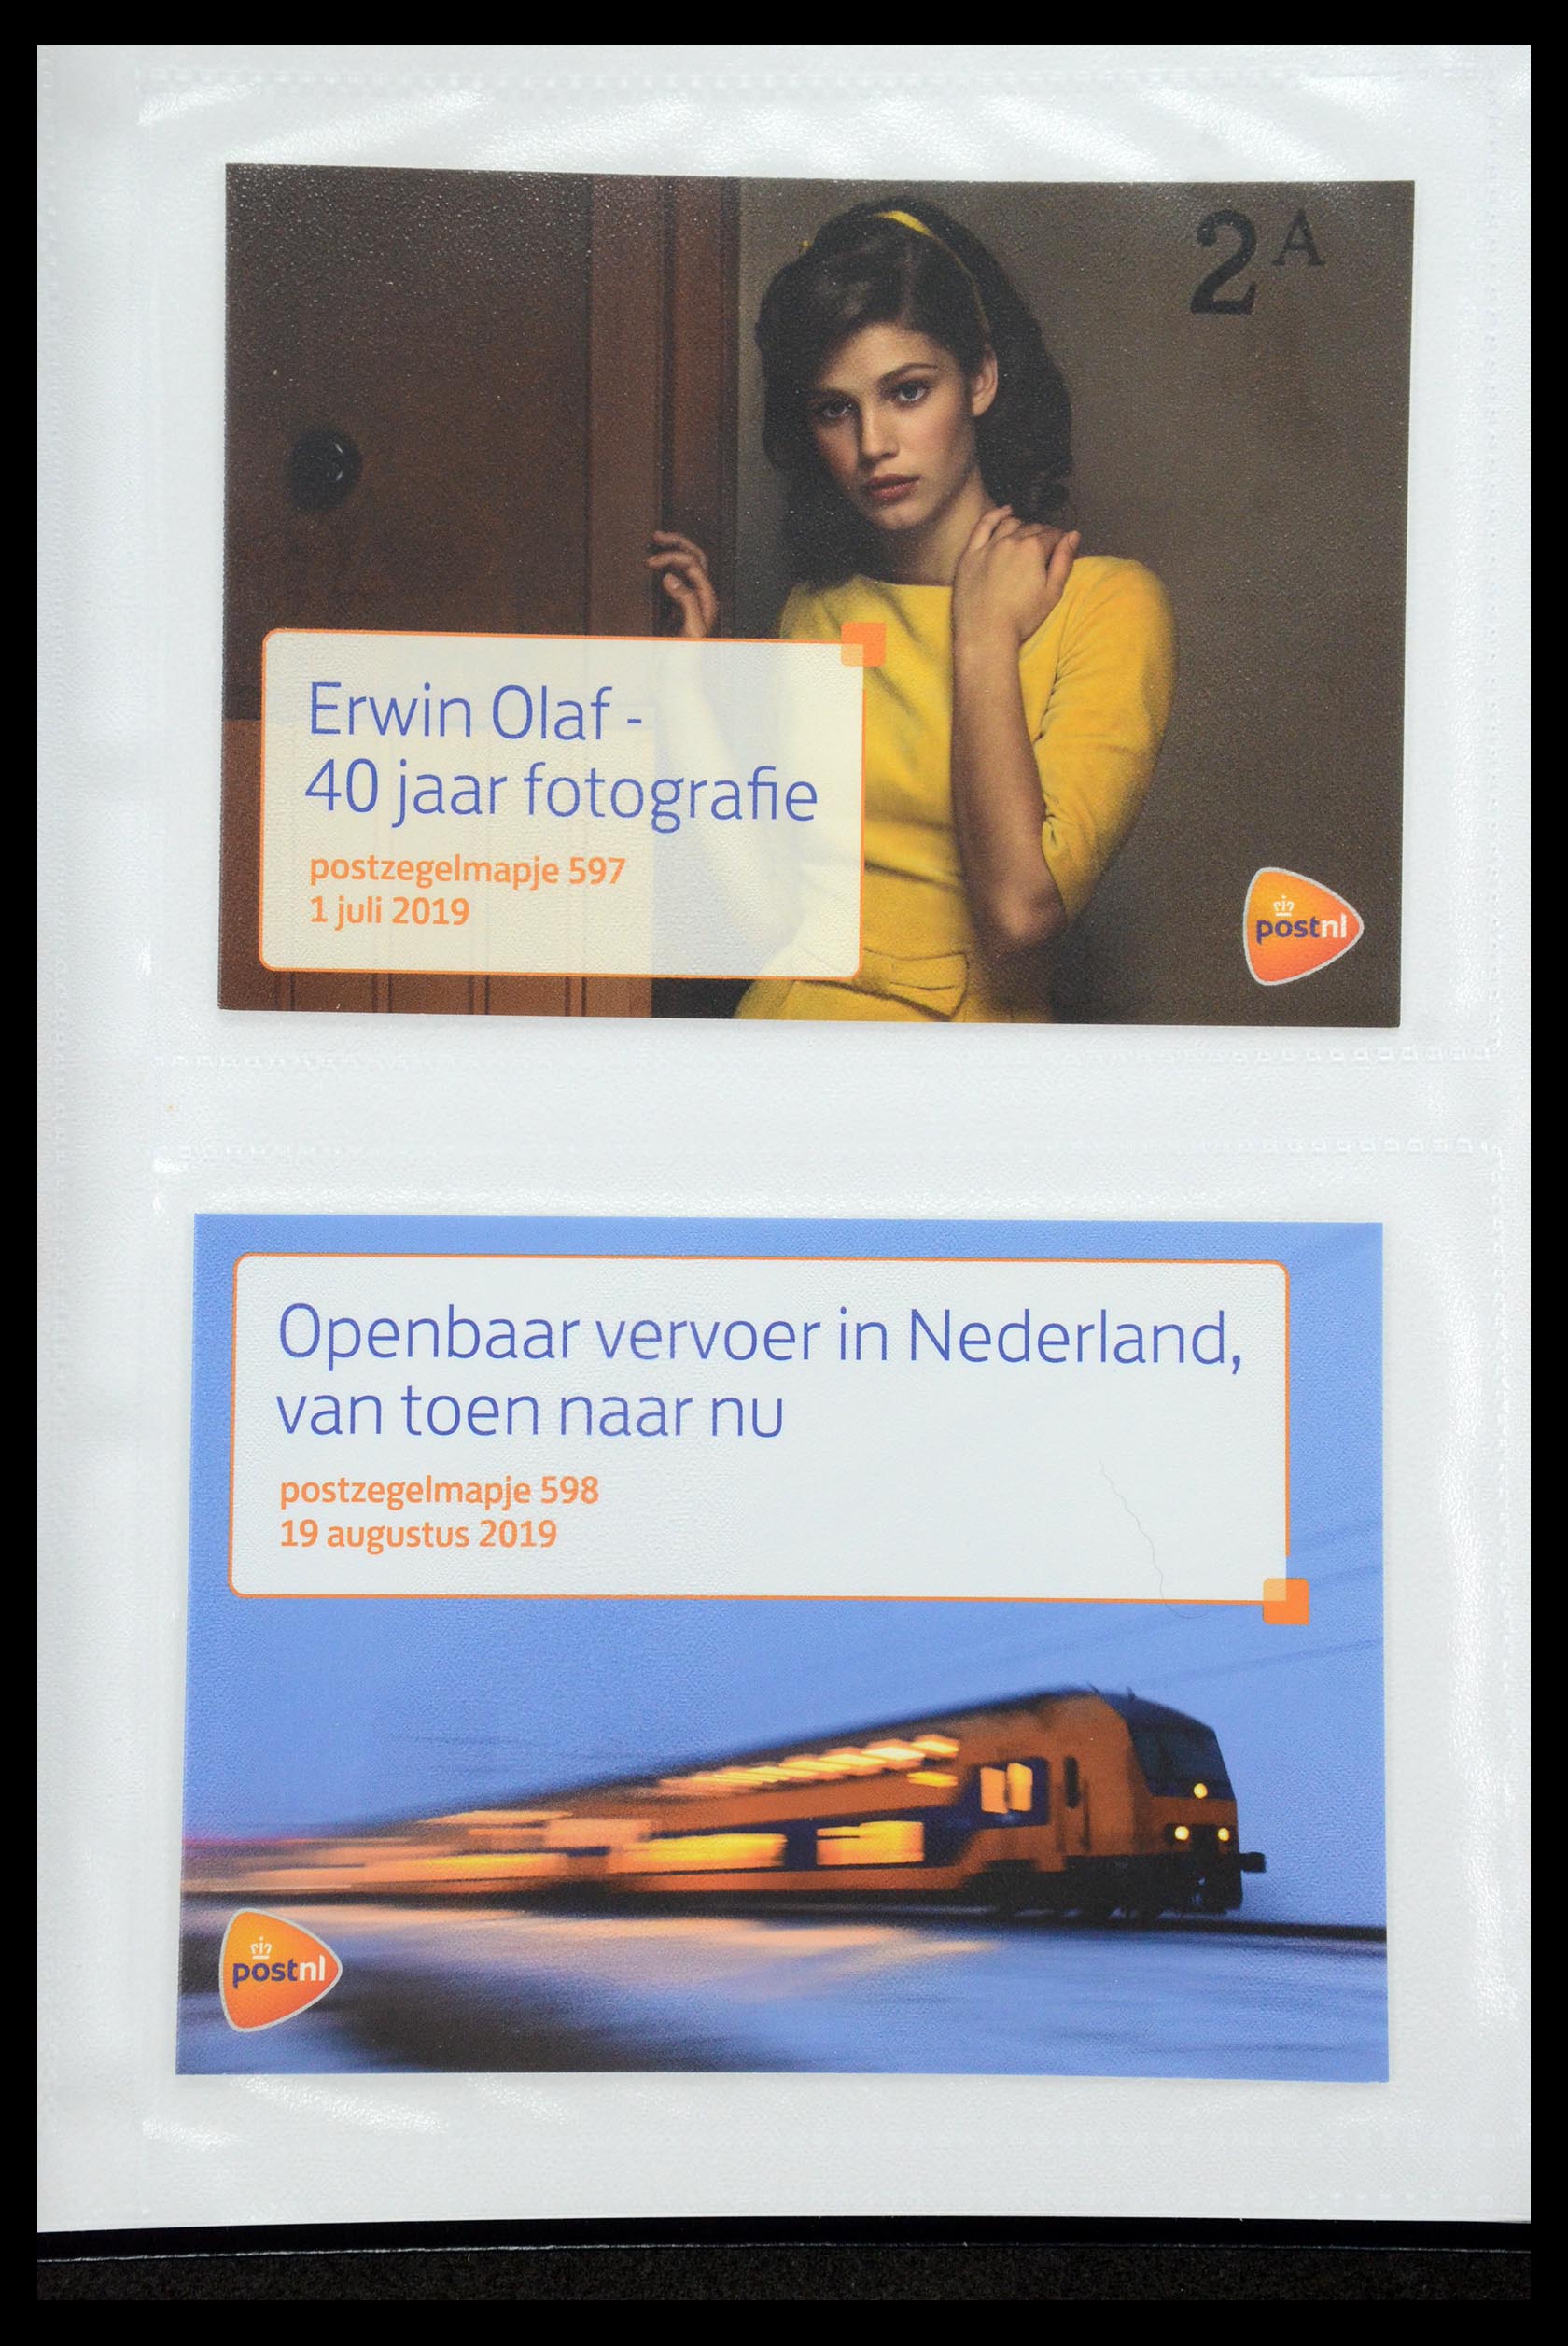 35947 361 - Stamp Collection 35947 Netherlands PTT presentation packs 1982-2019!